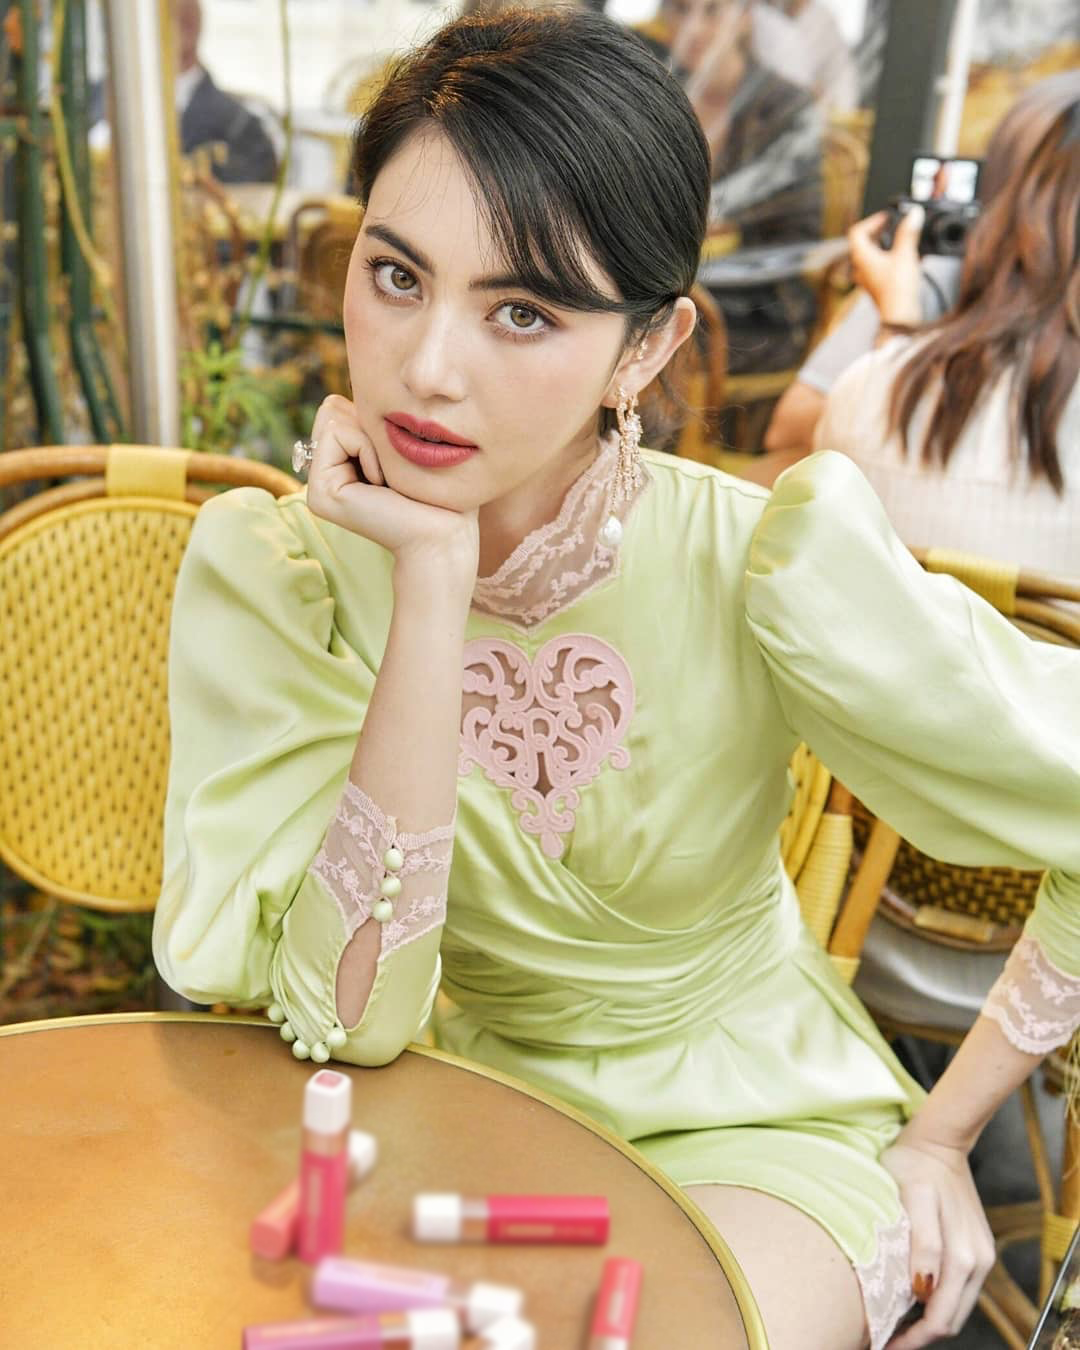 泰国小花mai穿绿色镂空裙,风格自然不装嫩,浓妆红唇美出新高度